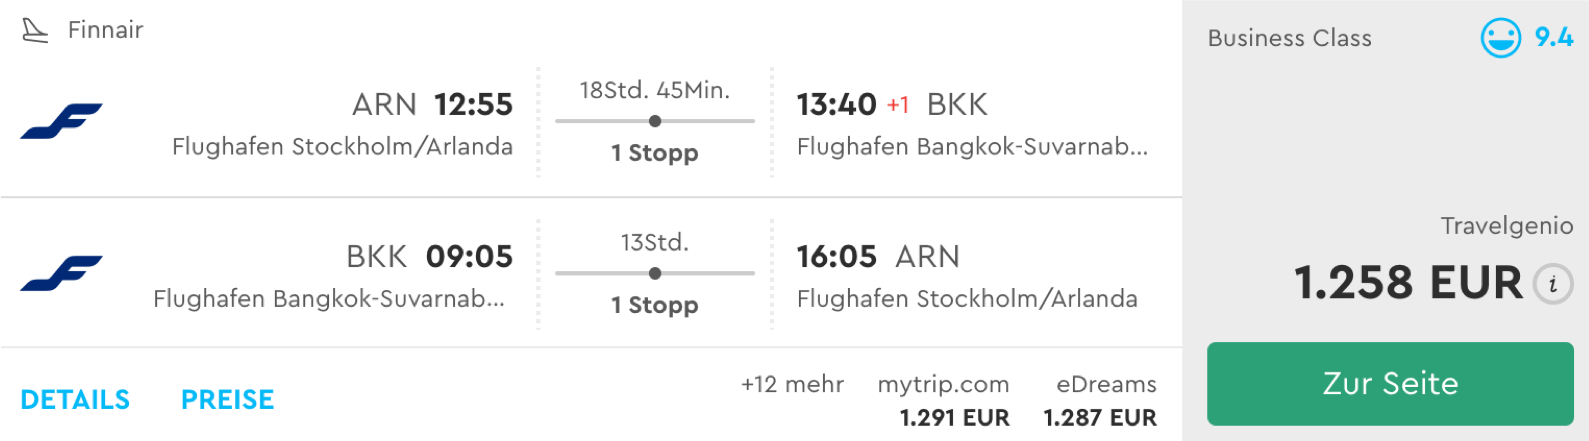 Günstig Finnair Business Class nach Bangkok fliegen